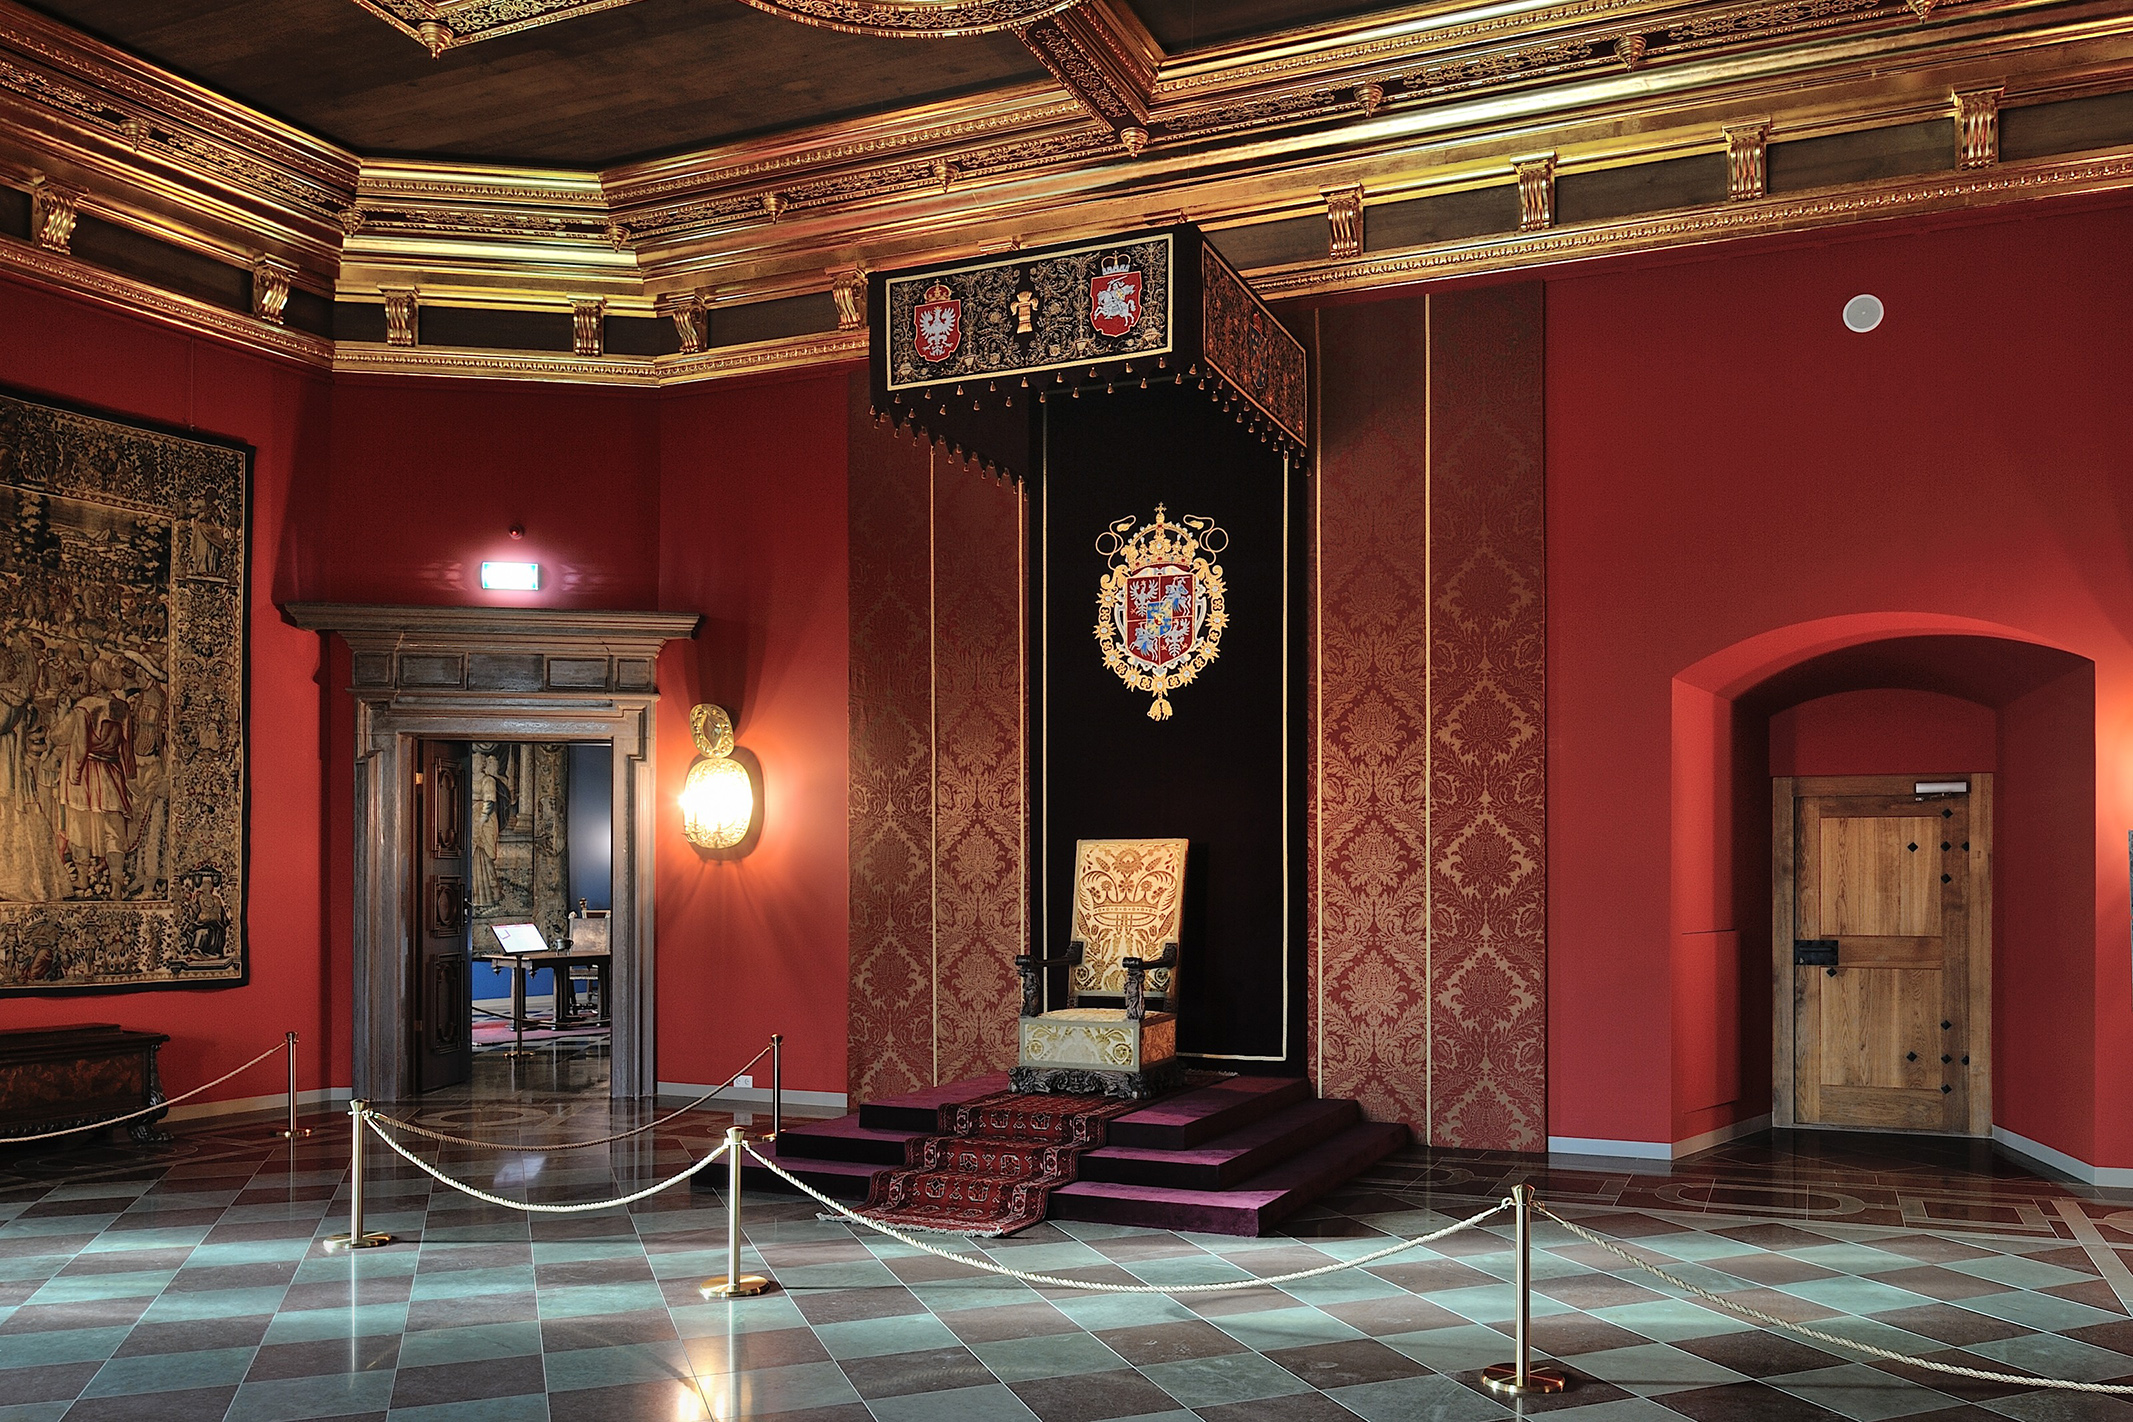 Antroji rūmų dalis bus atverta lankytojams 2018 m. liepos 6 d. Čia matote barokinę sosto salę po lubų ir sienų dekoravimo.